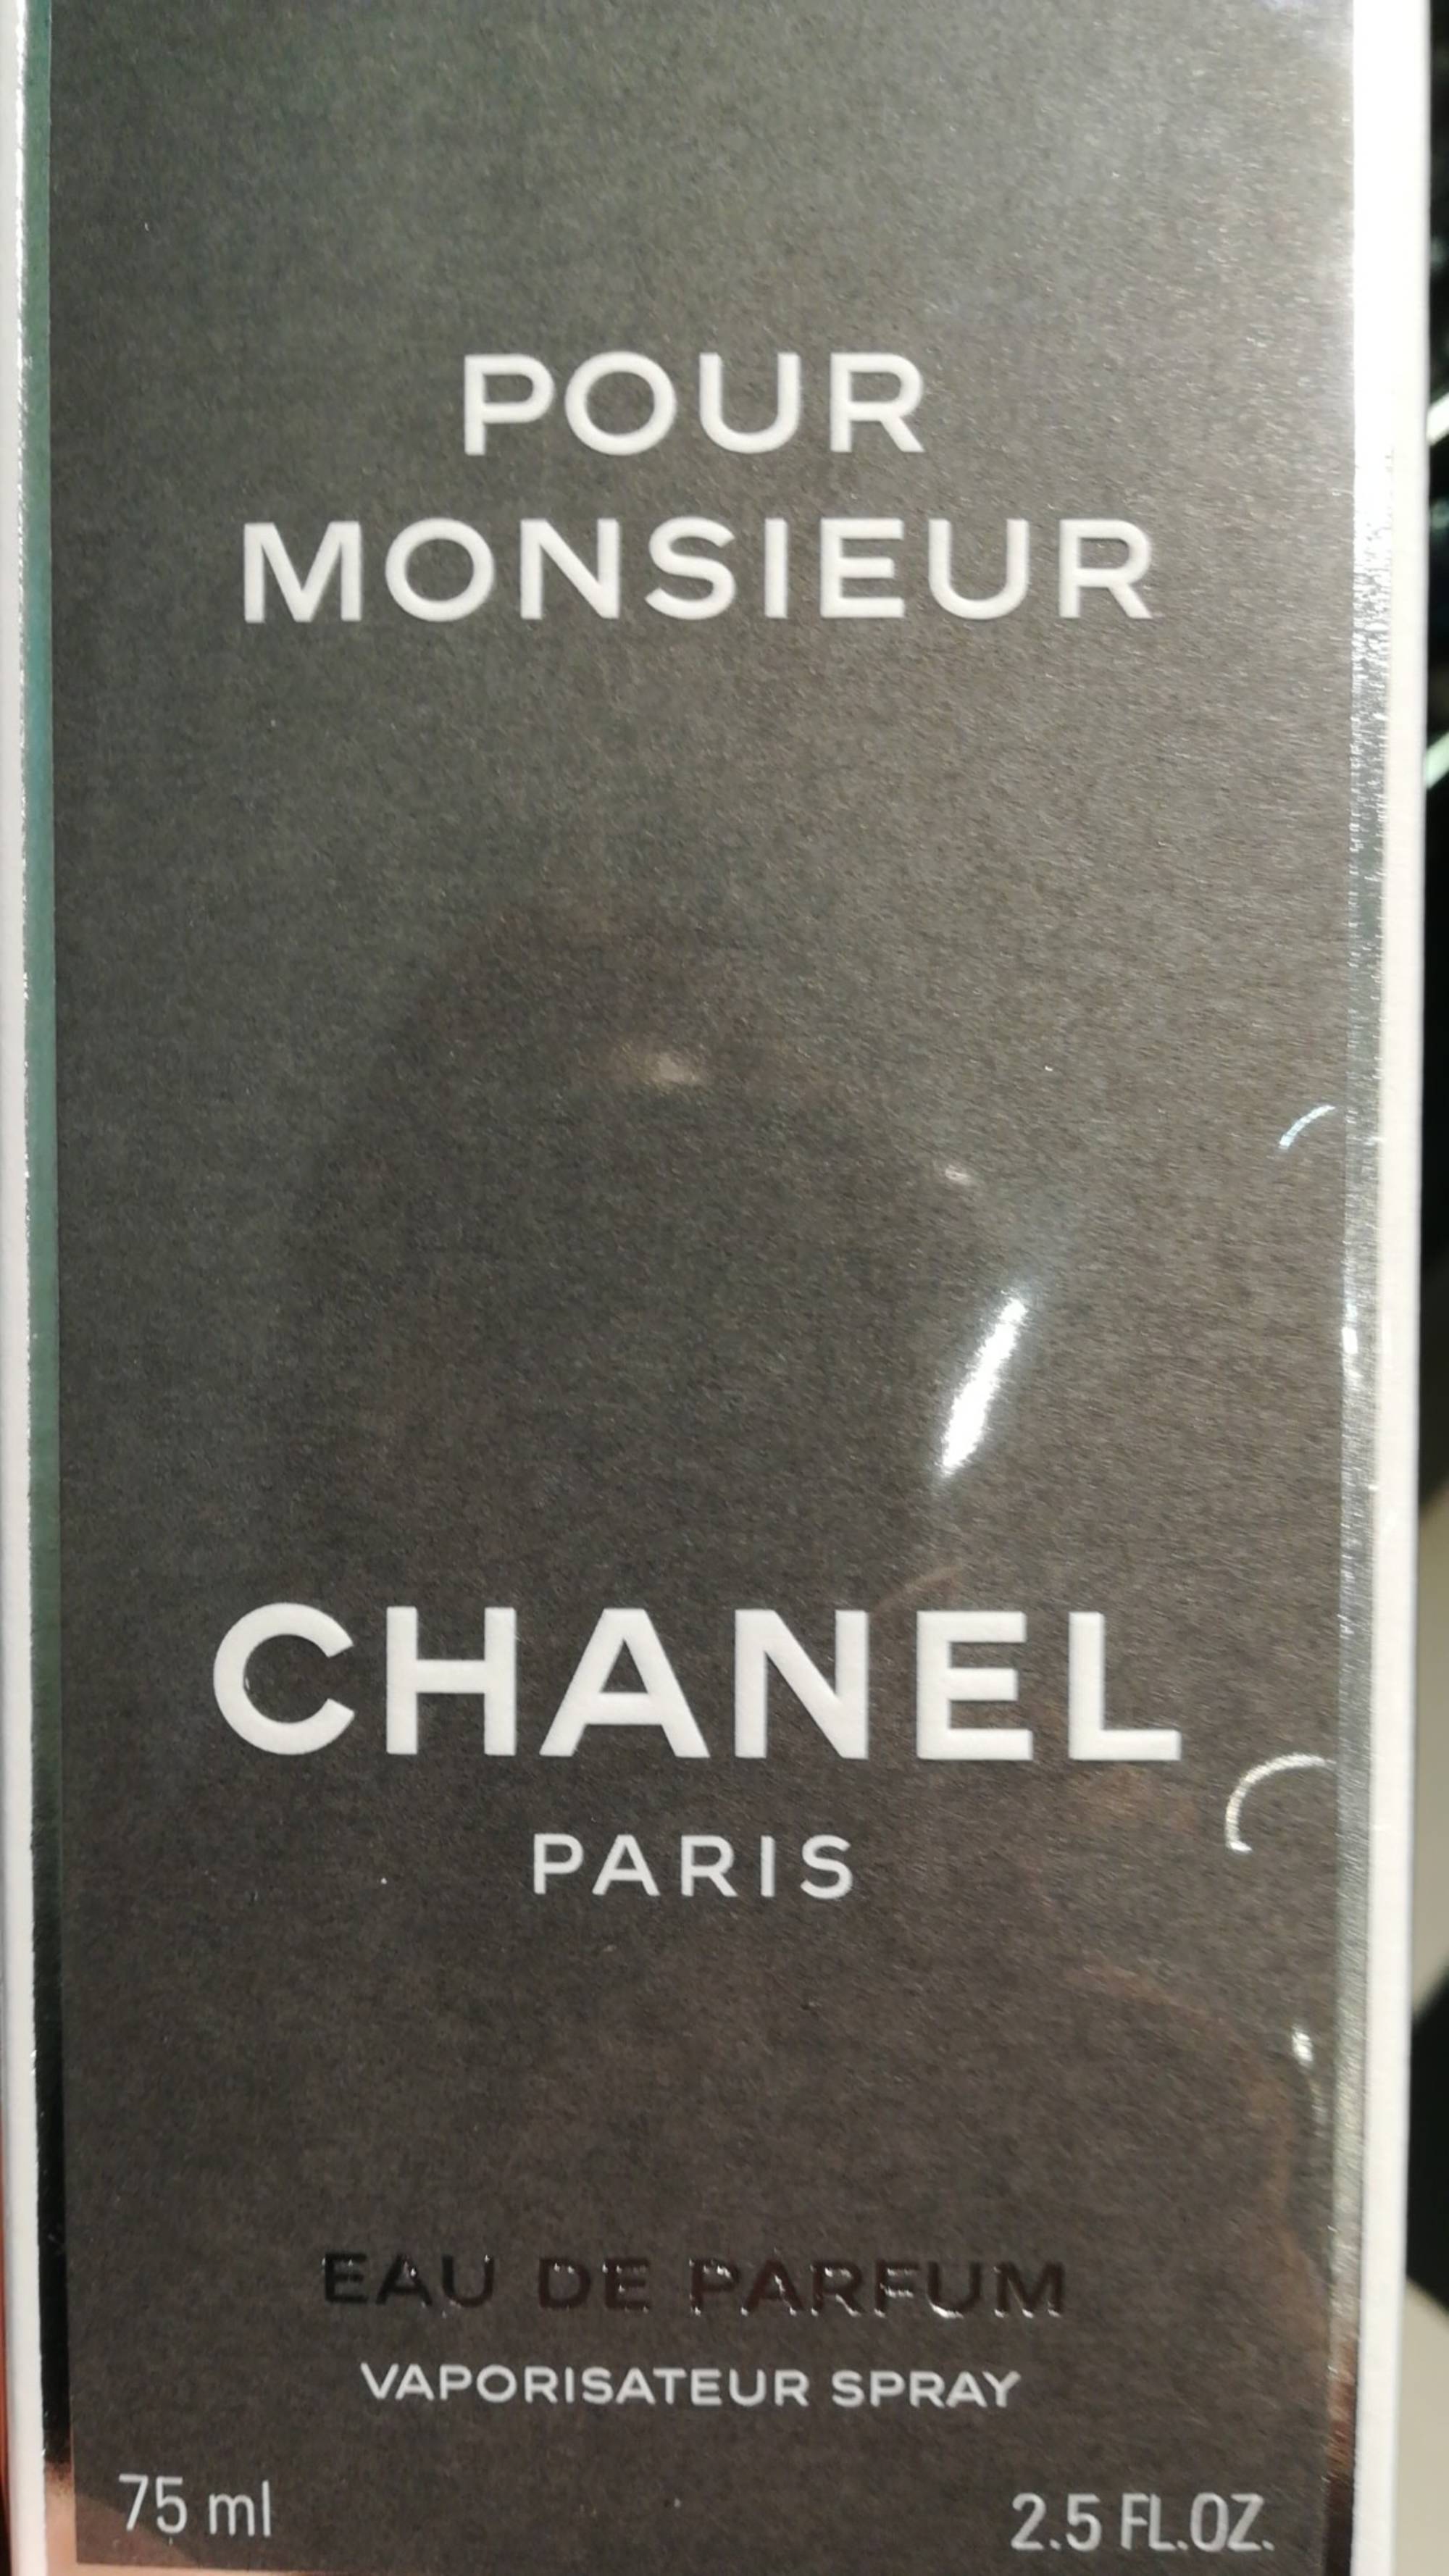 CHANEL - Pour monsieur - Eau de parfum